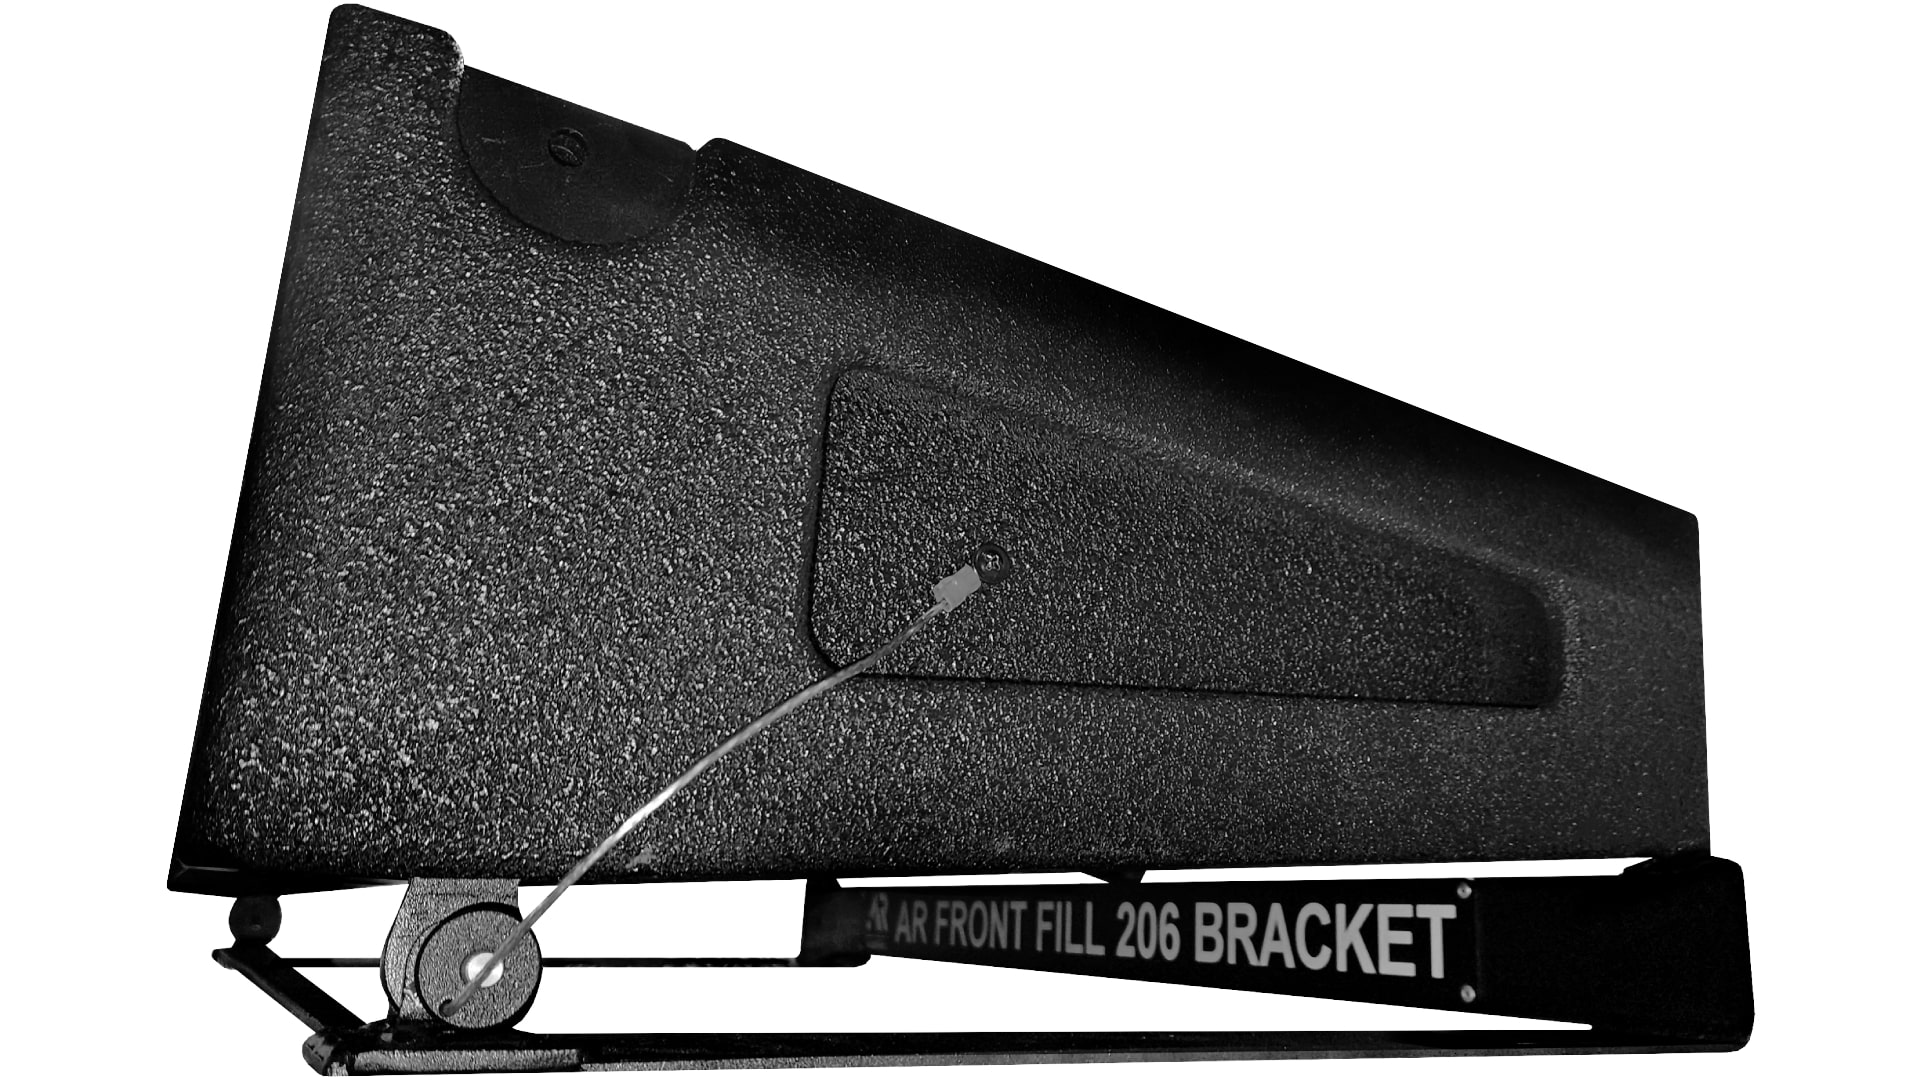 Стойки и держатели для акустики AUDIORUS AR FRONT FILL 206 BRACKET настенные крепежи tannoy variball bracket для ams 6 8